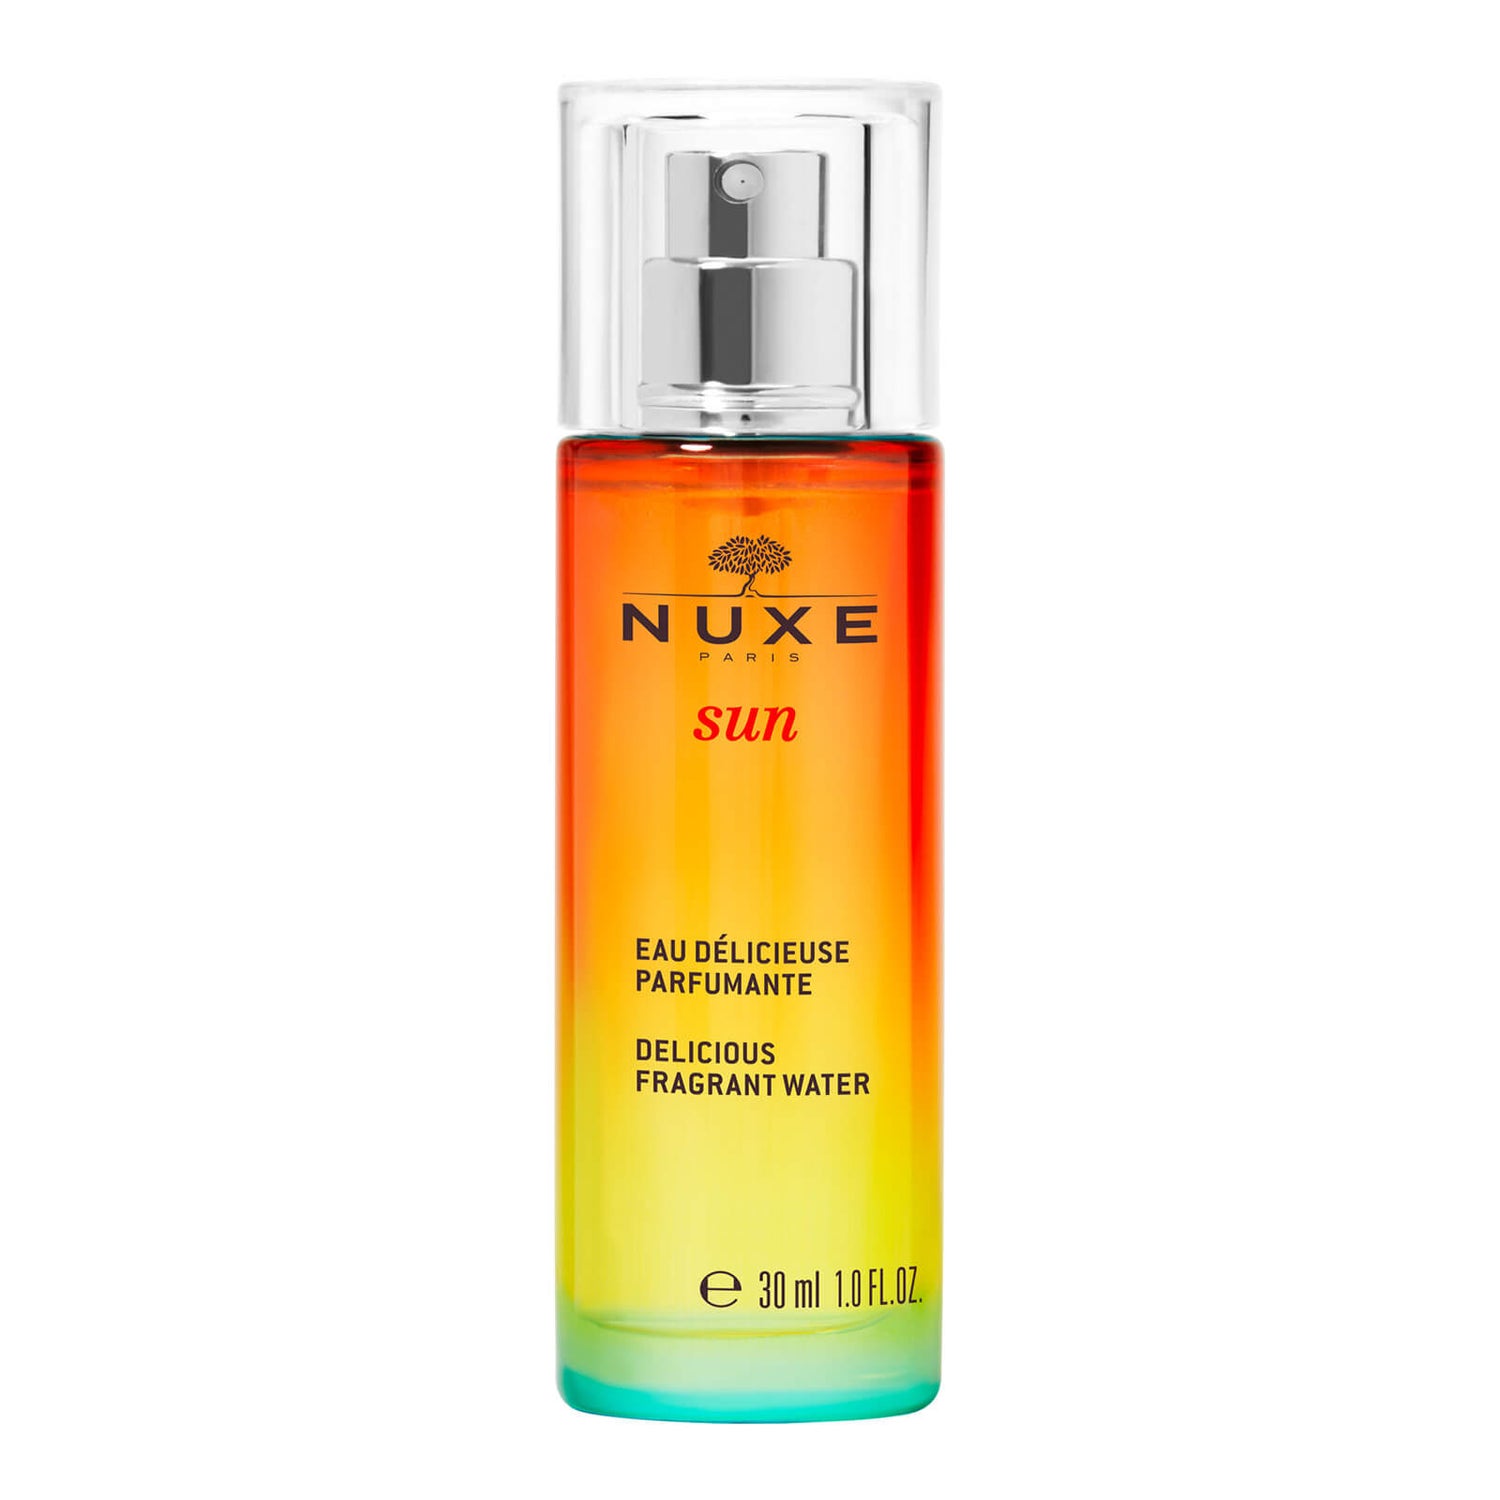 Delicious Fragrant Water Spray, NUXE Sun 30ml